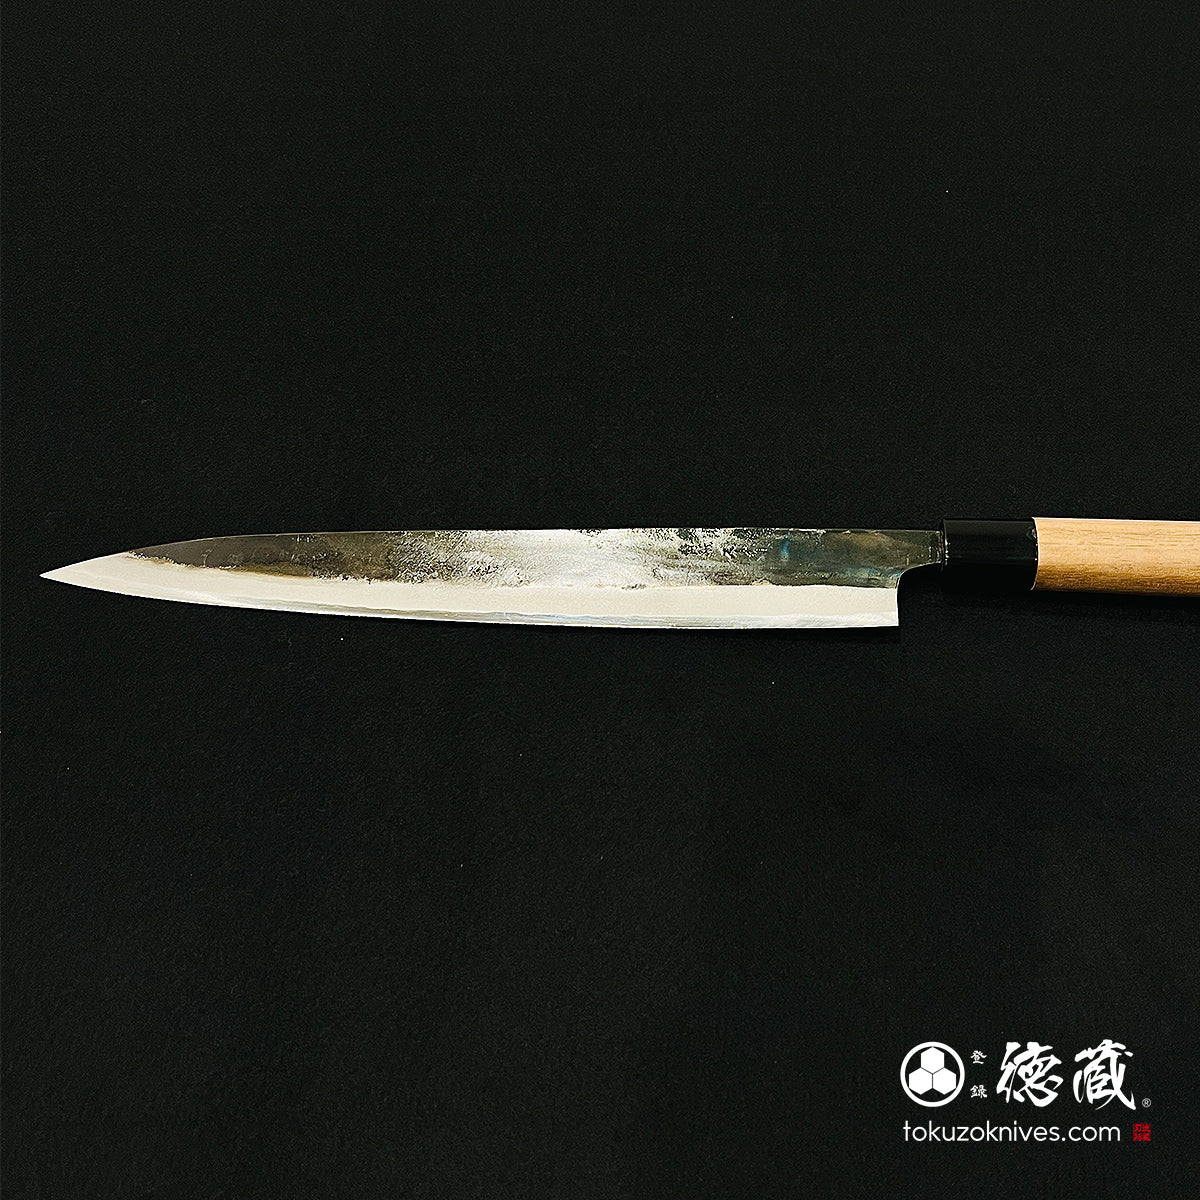 Blue S Sujihiki knife with walnut handle